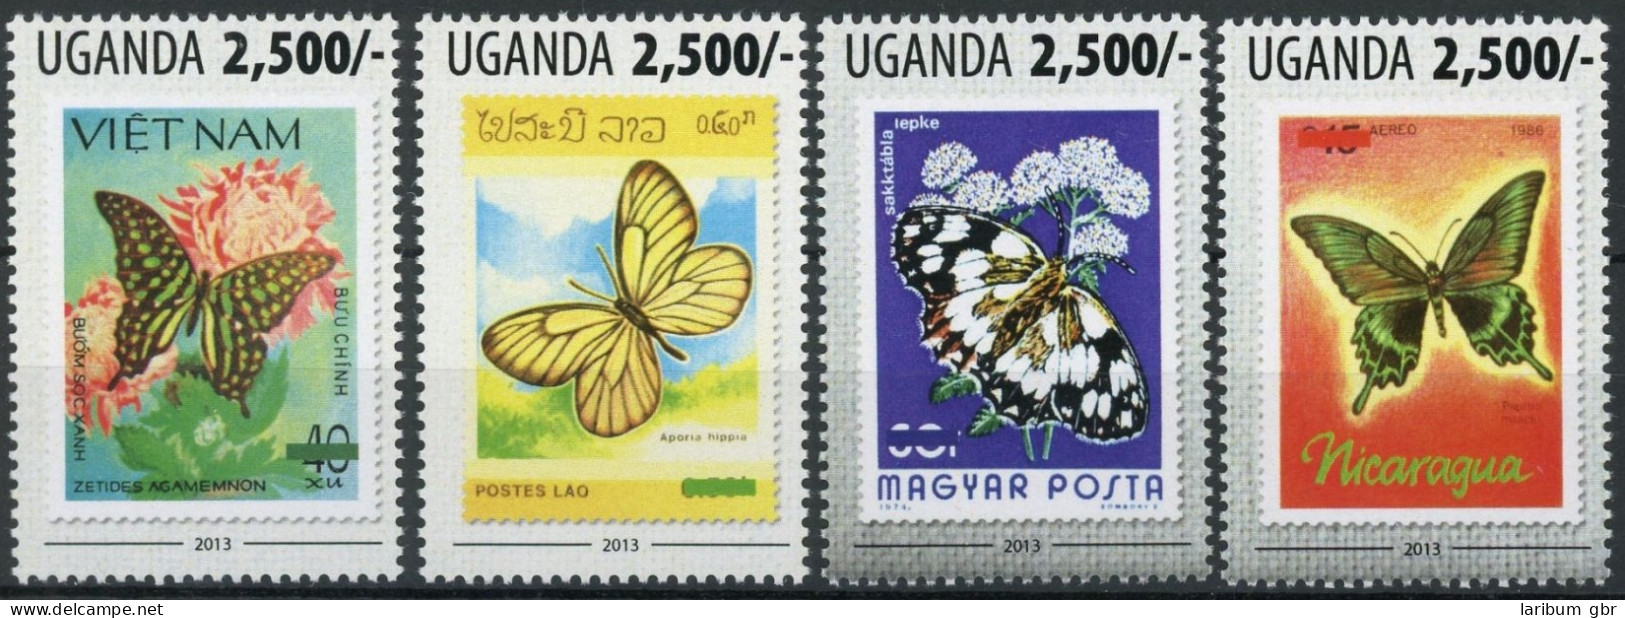 Uganda Einzelmarken 3127-3130 Postfrisch Schmetterling #HF388 - Ouganda (1962-...)